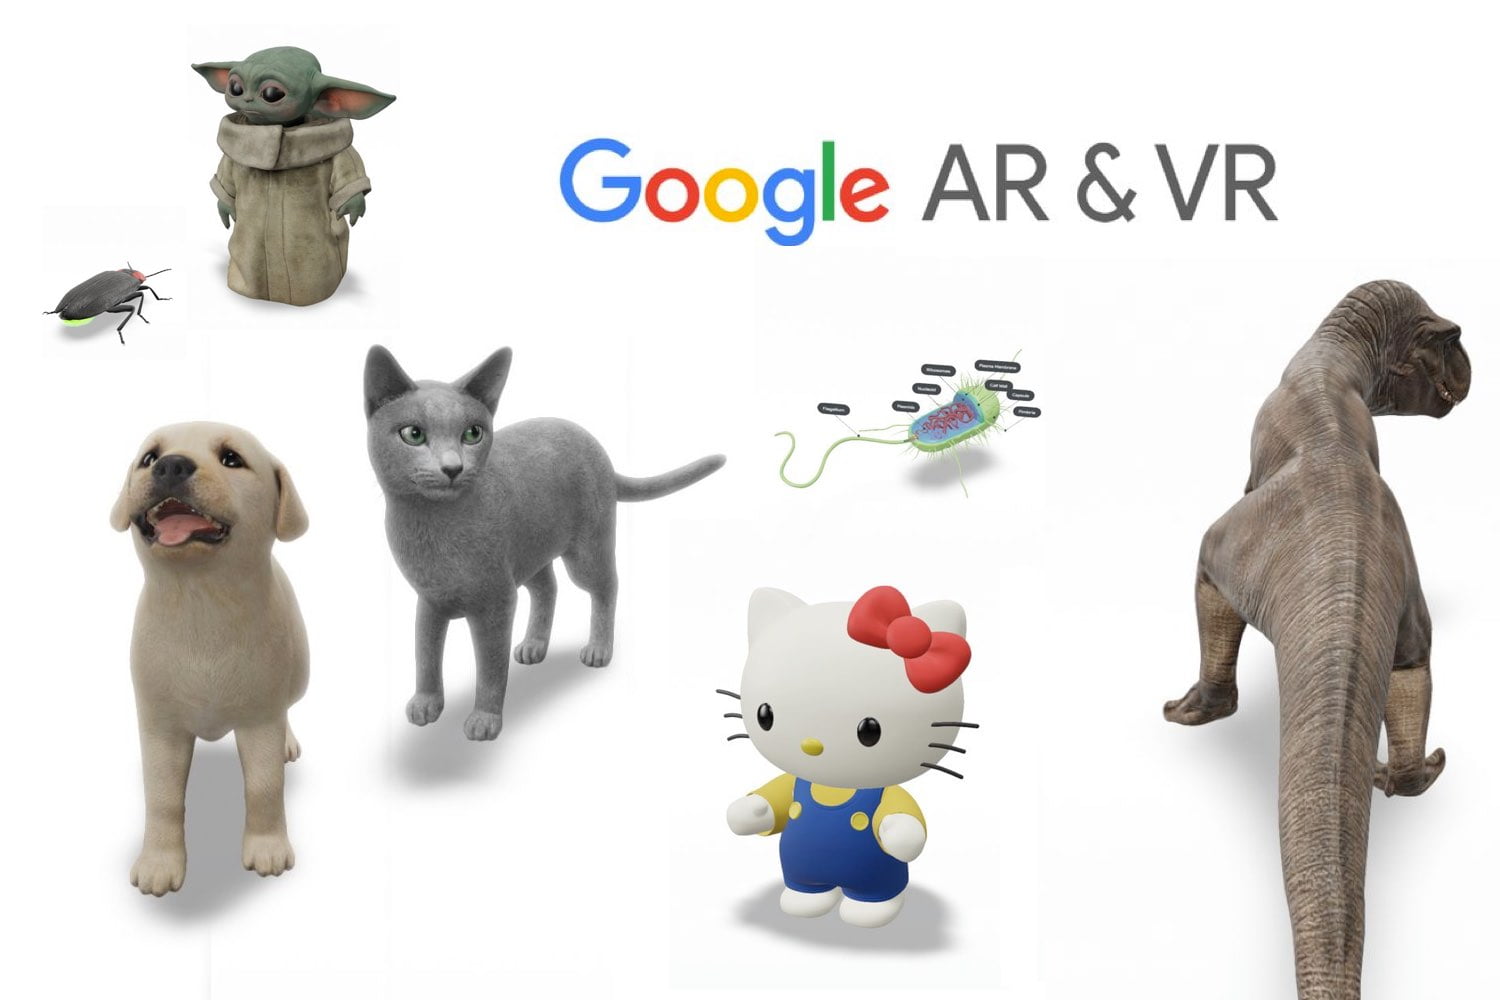 Google: ¿Cómo ver un tiburón o tigre en 3D con realidad aumentada